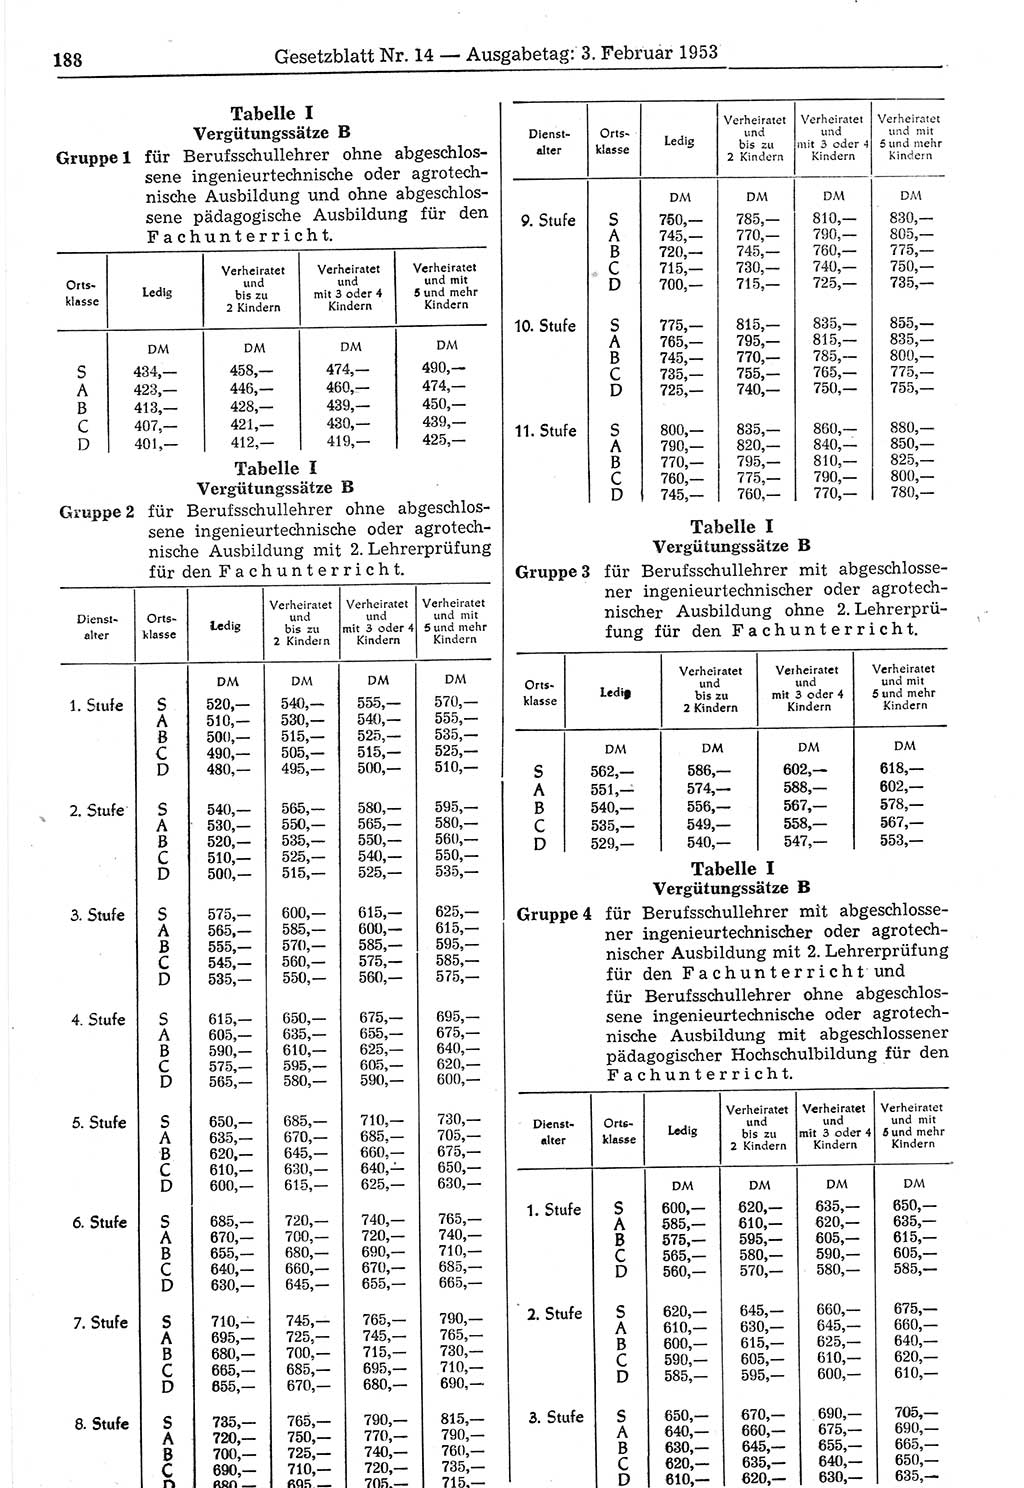 Gesetzblatt (GBl.) der Deutschen Demokratischen Republik (DDR) 1953, Seite 188 (GBl. DDR 1953, S. 188)